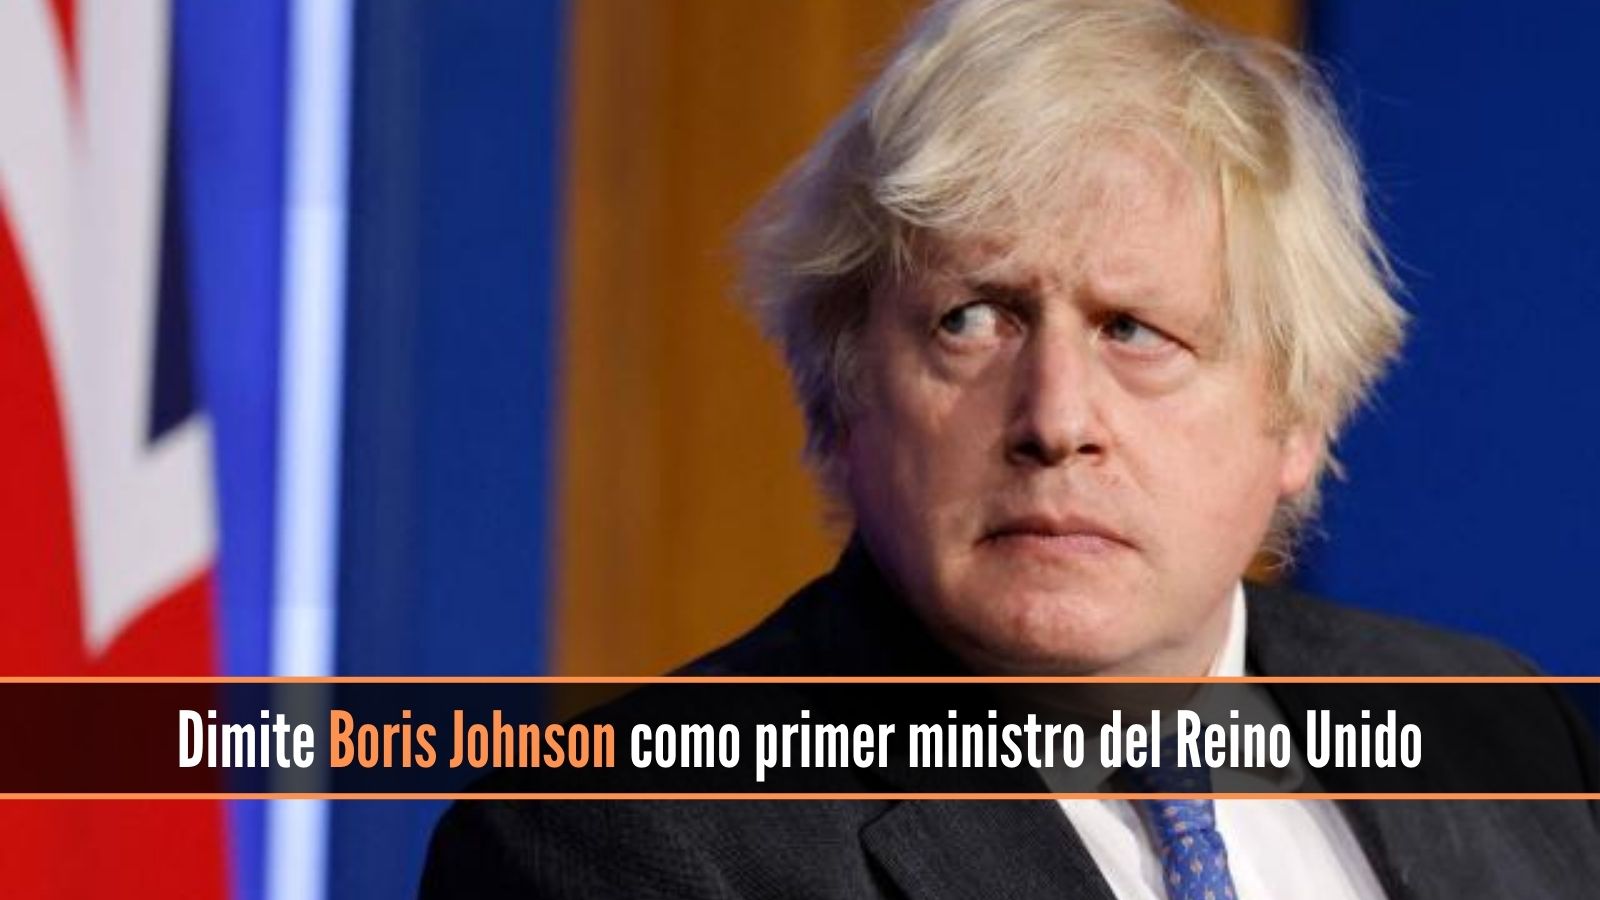 Dimite Boris Johnson a su cargo como primer ministro del Reino Unido